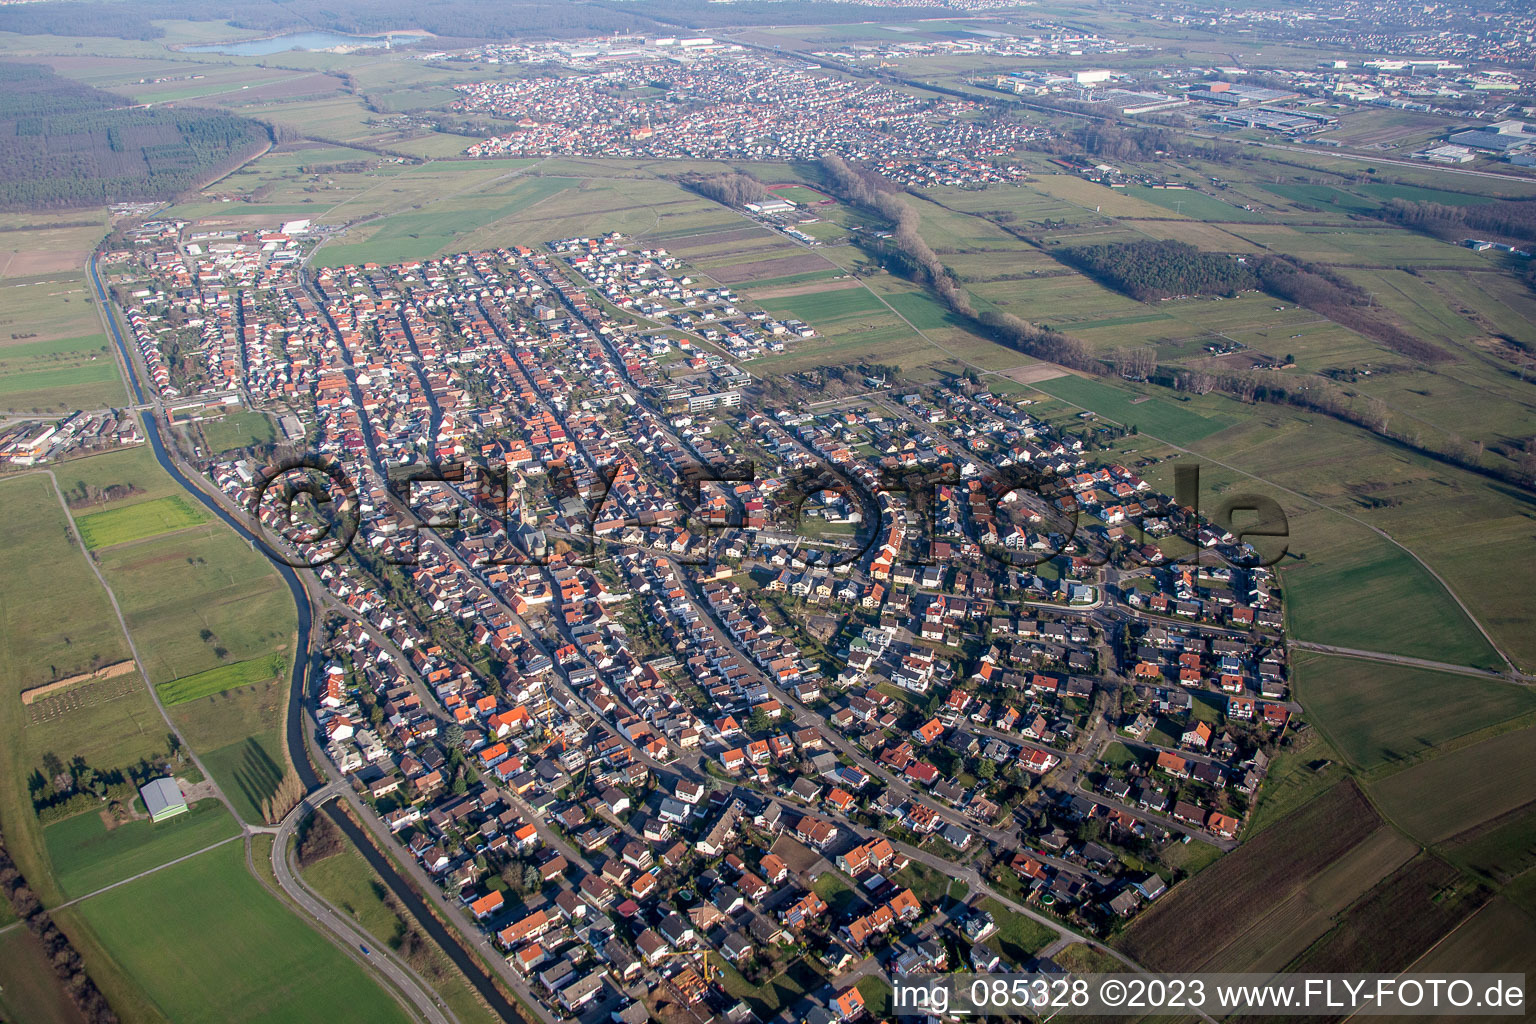 Luftbild von Ortsteil Neuthard in Karlsdorf-Neuthard im Bundesland Baden-Württemberg, Deutschland